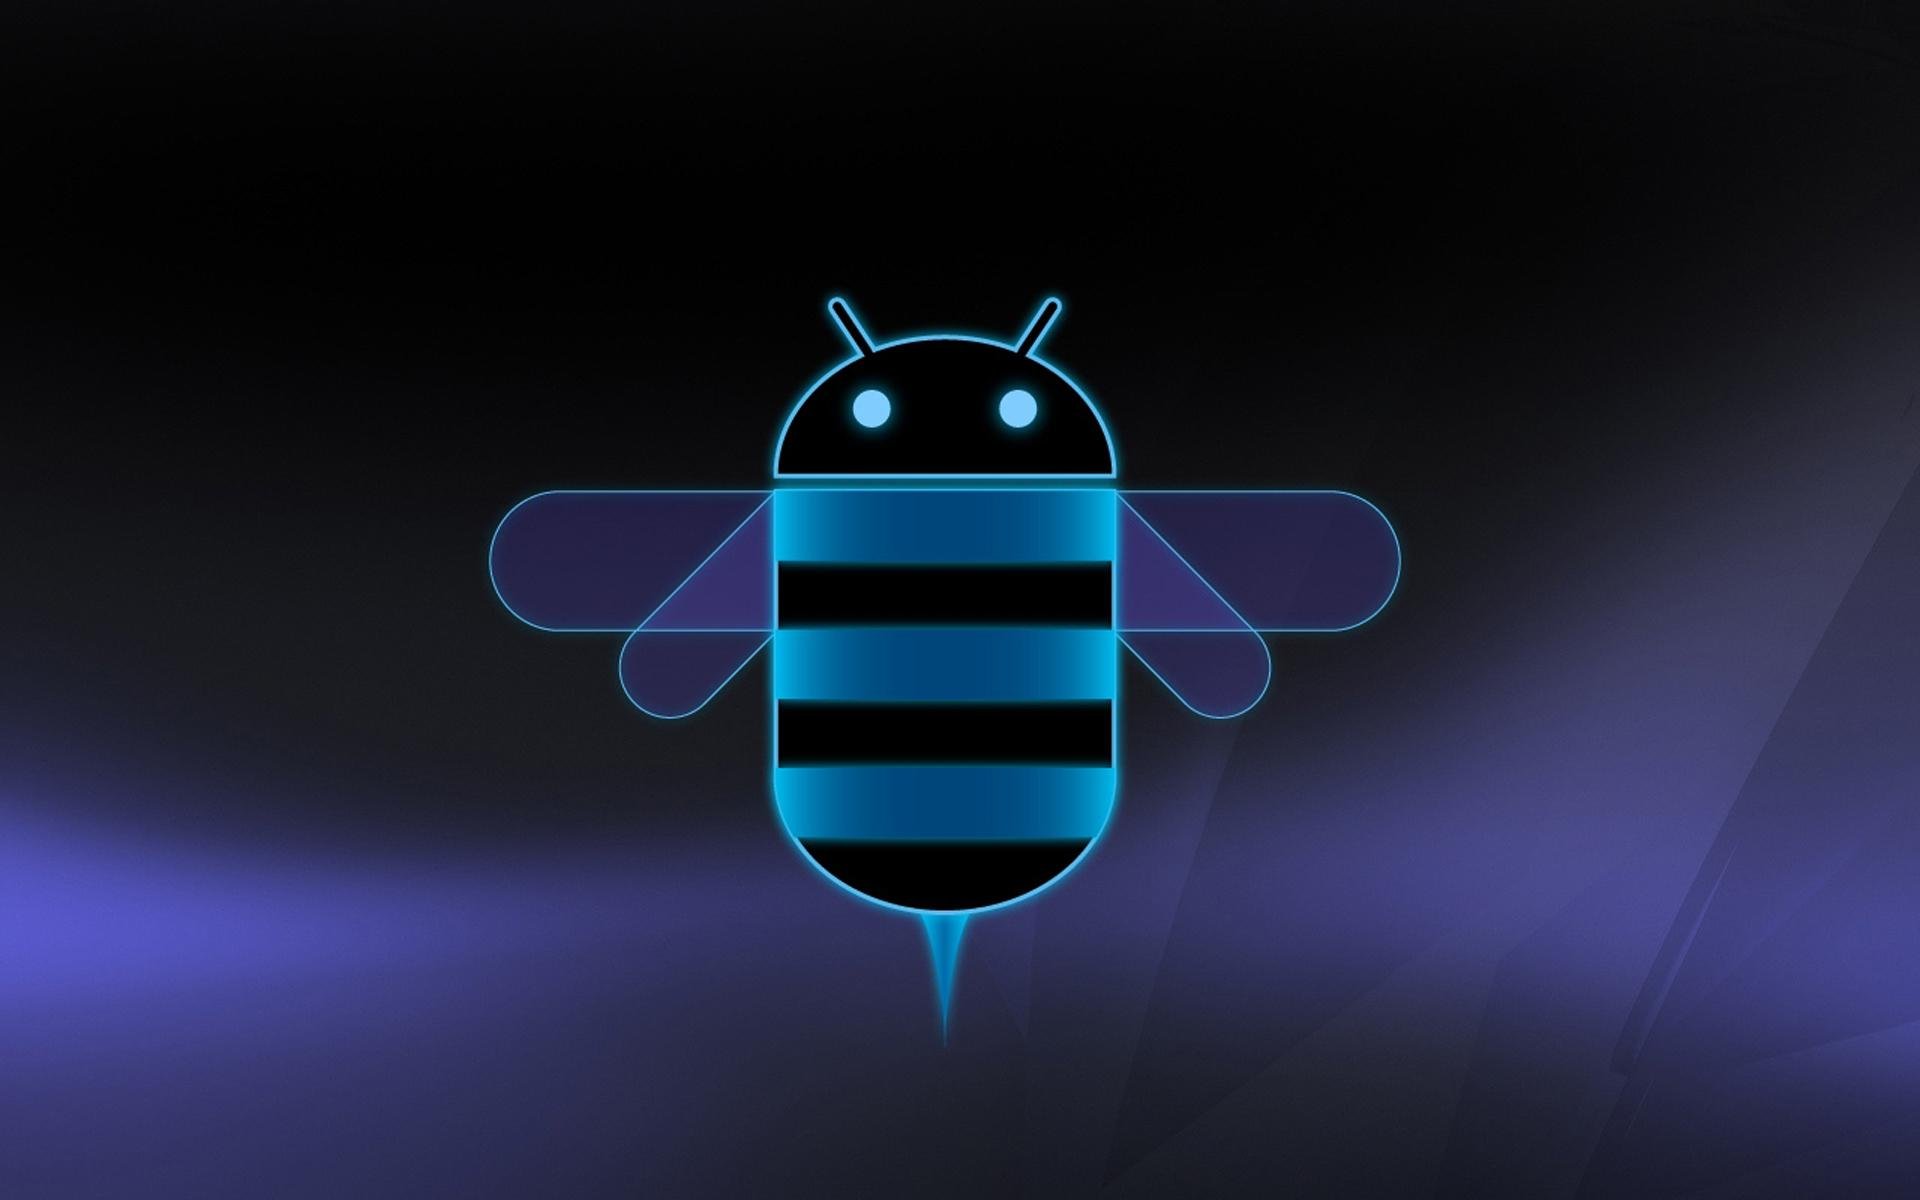 Обои андроида 10. Андроид 3.0 пасхалка. Андроид хонейкомб. Android 3.0 / 3.1 / 3.2 Honeycomb. Заставка на рабочий стол андроид.